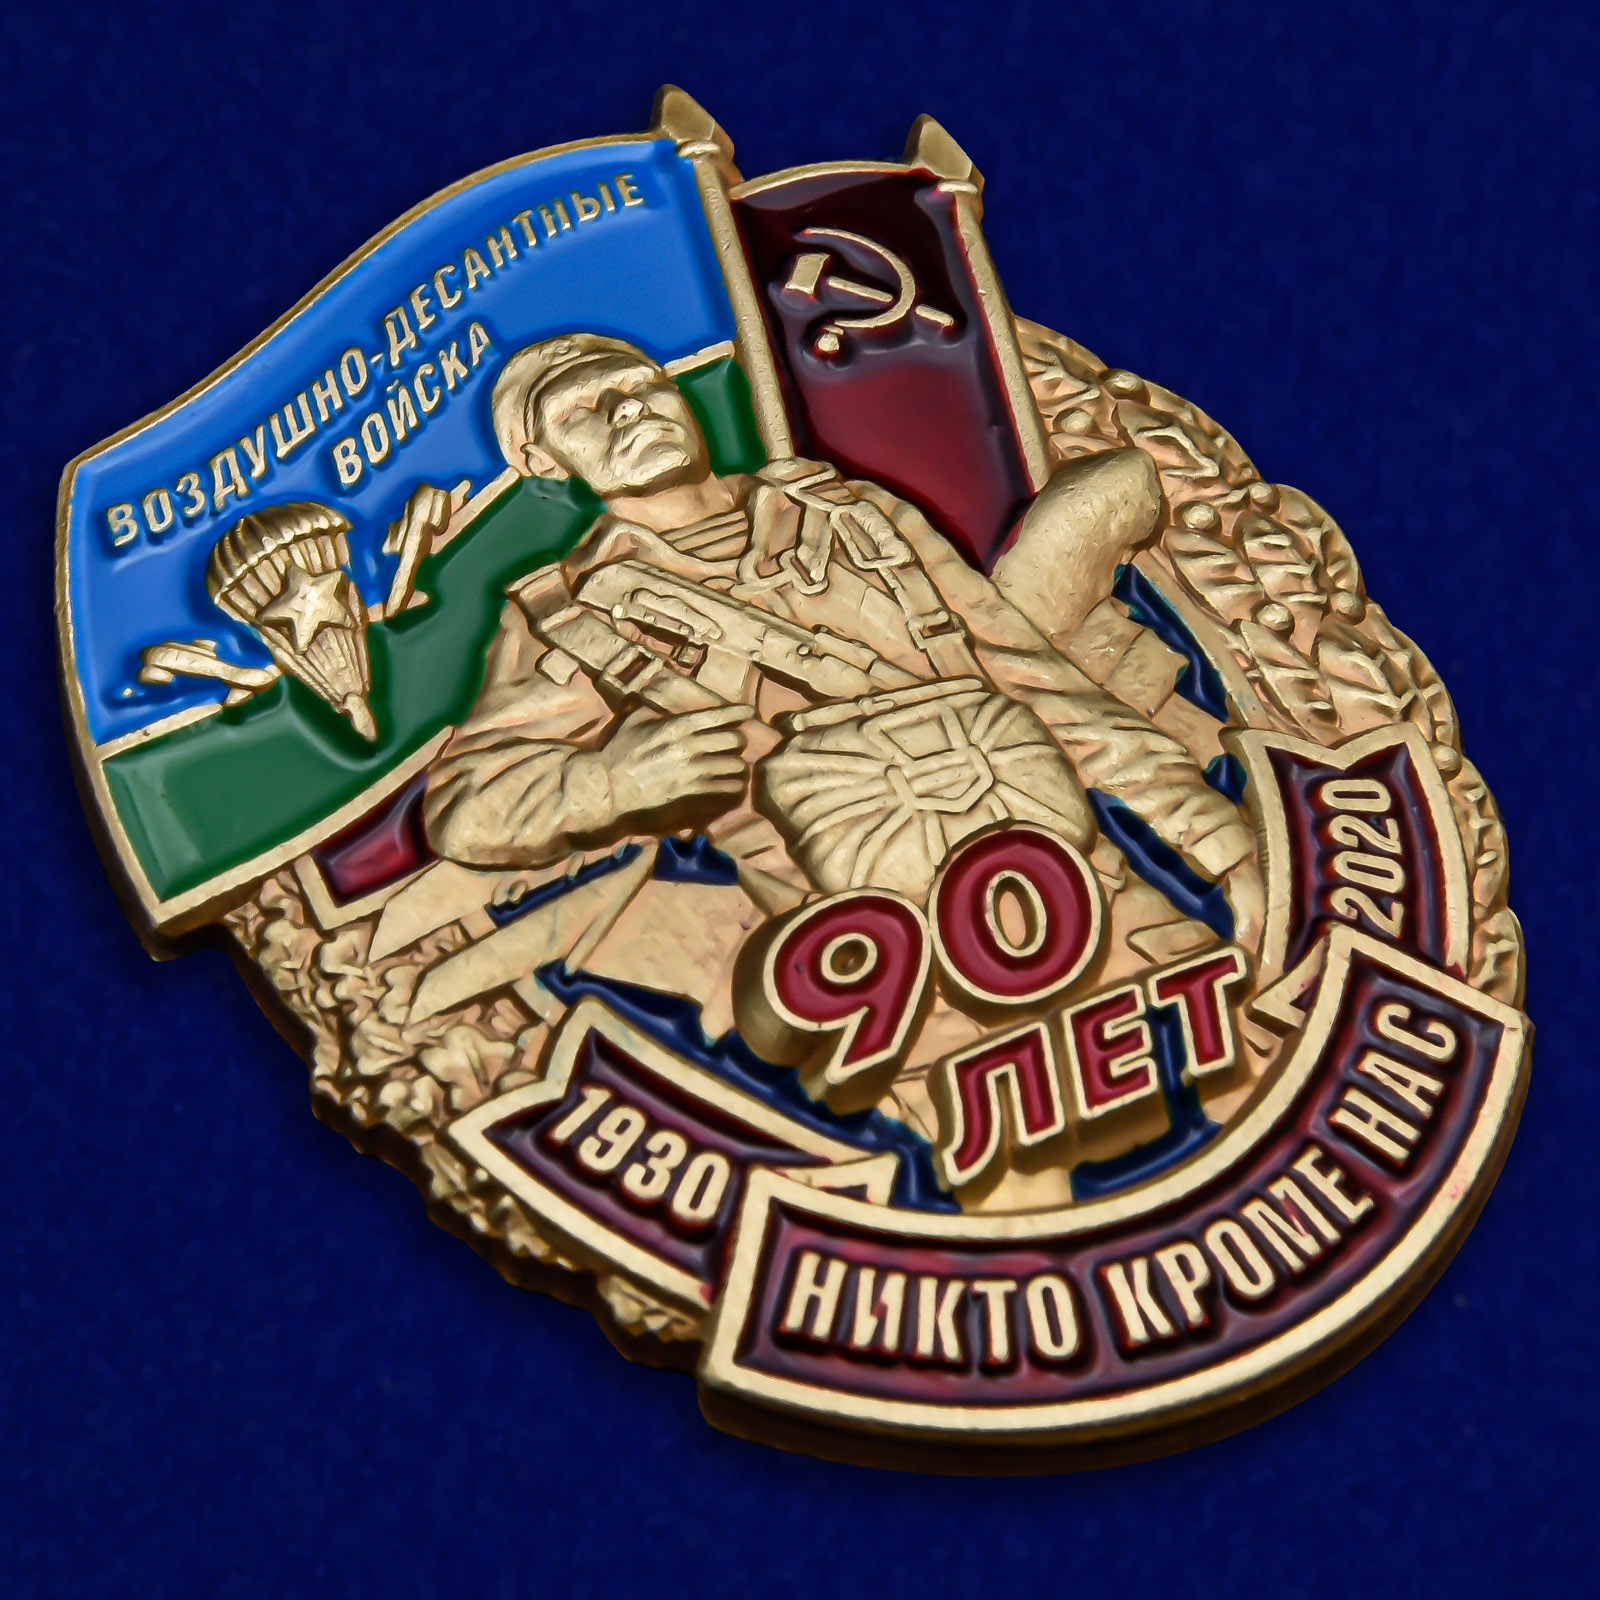 Памятный знак "90 лет Воздушно-десантным войскам" 